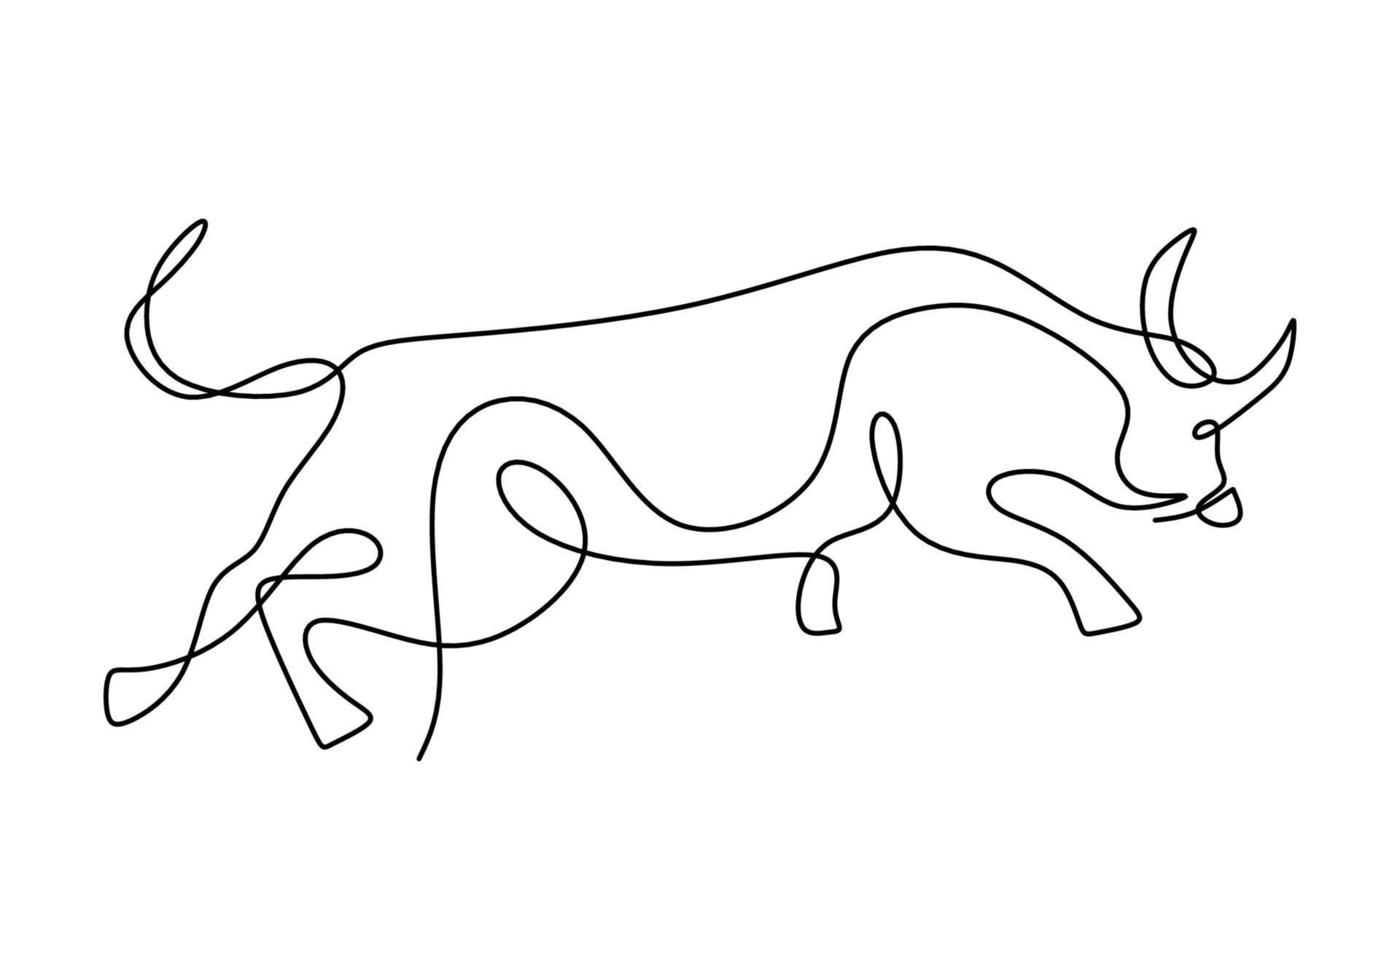 dibujo continuo de un símbolo de toro de 2021. año del buey dibujado en un estilo minimalista moderno aislado sobre fondo blanco. buey abstracto, toro, vaca. feliz año nuevo 2021. ilustración vectorial vector